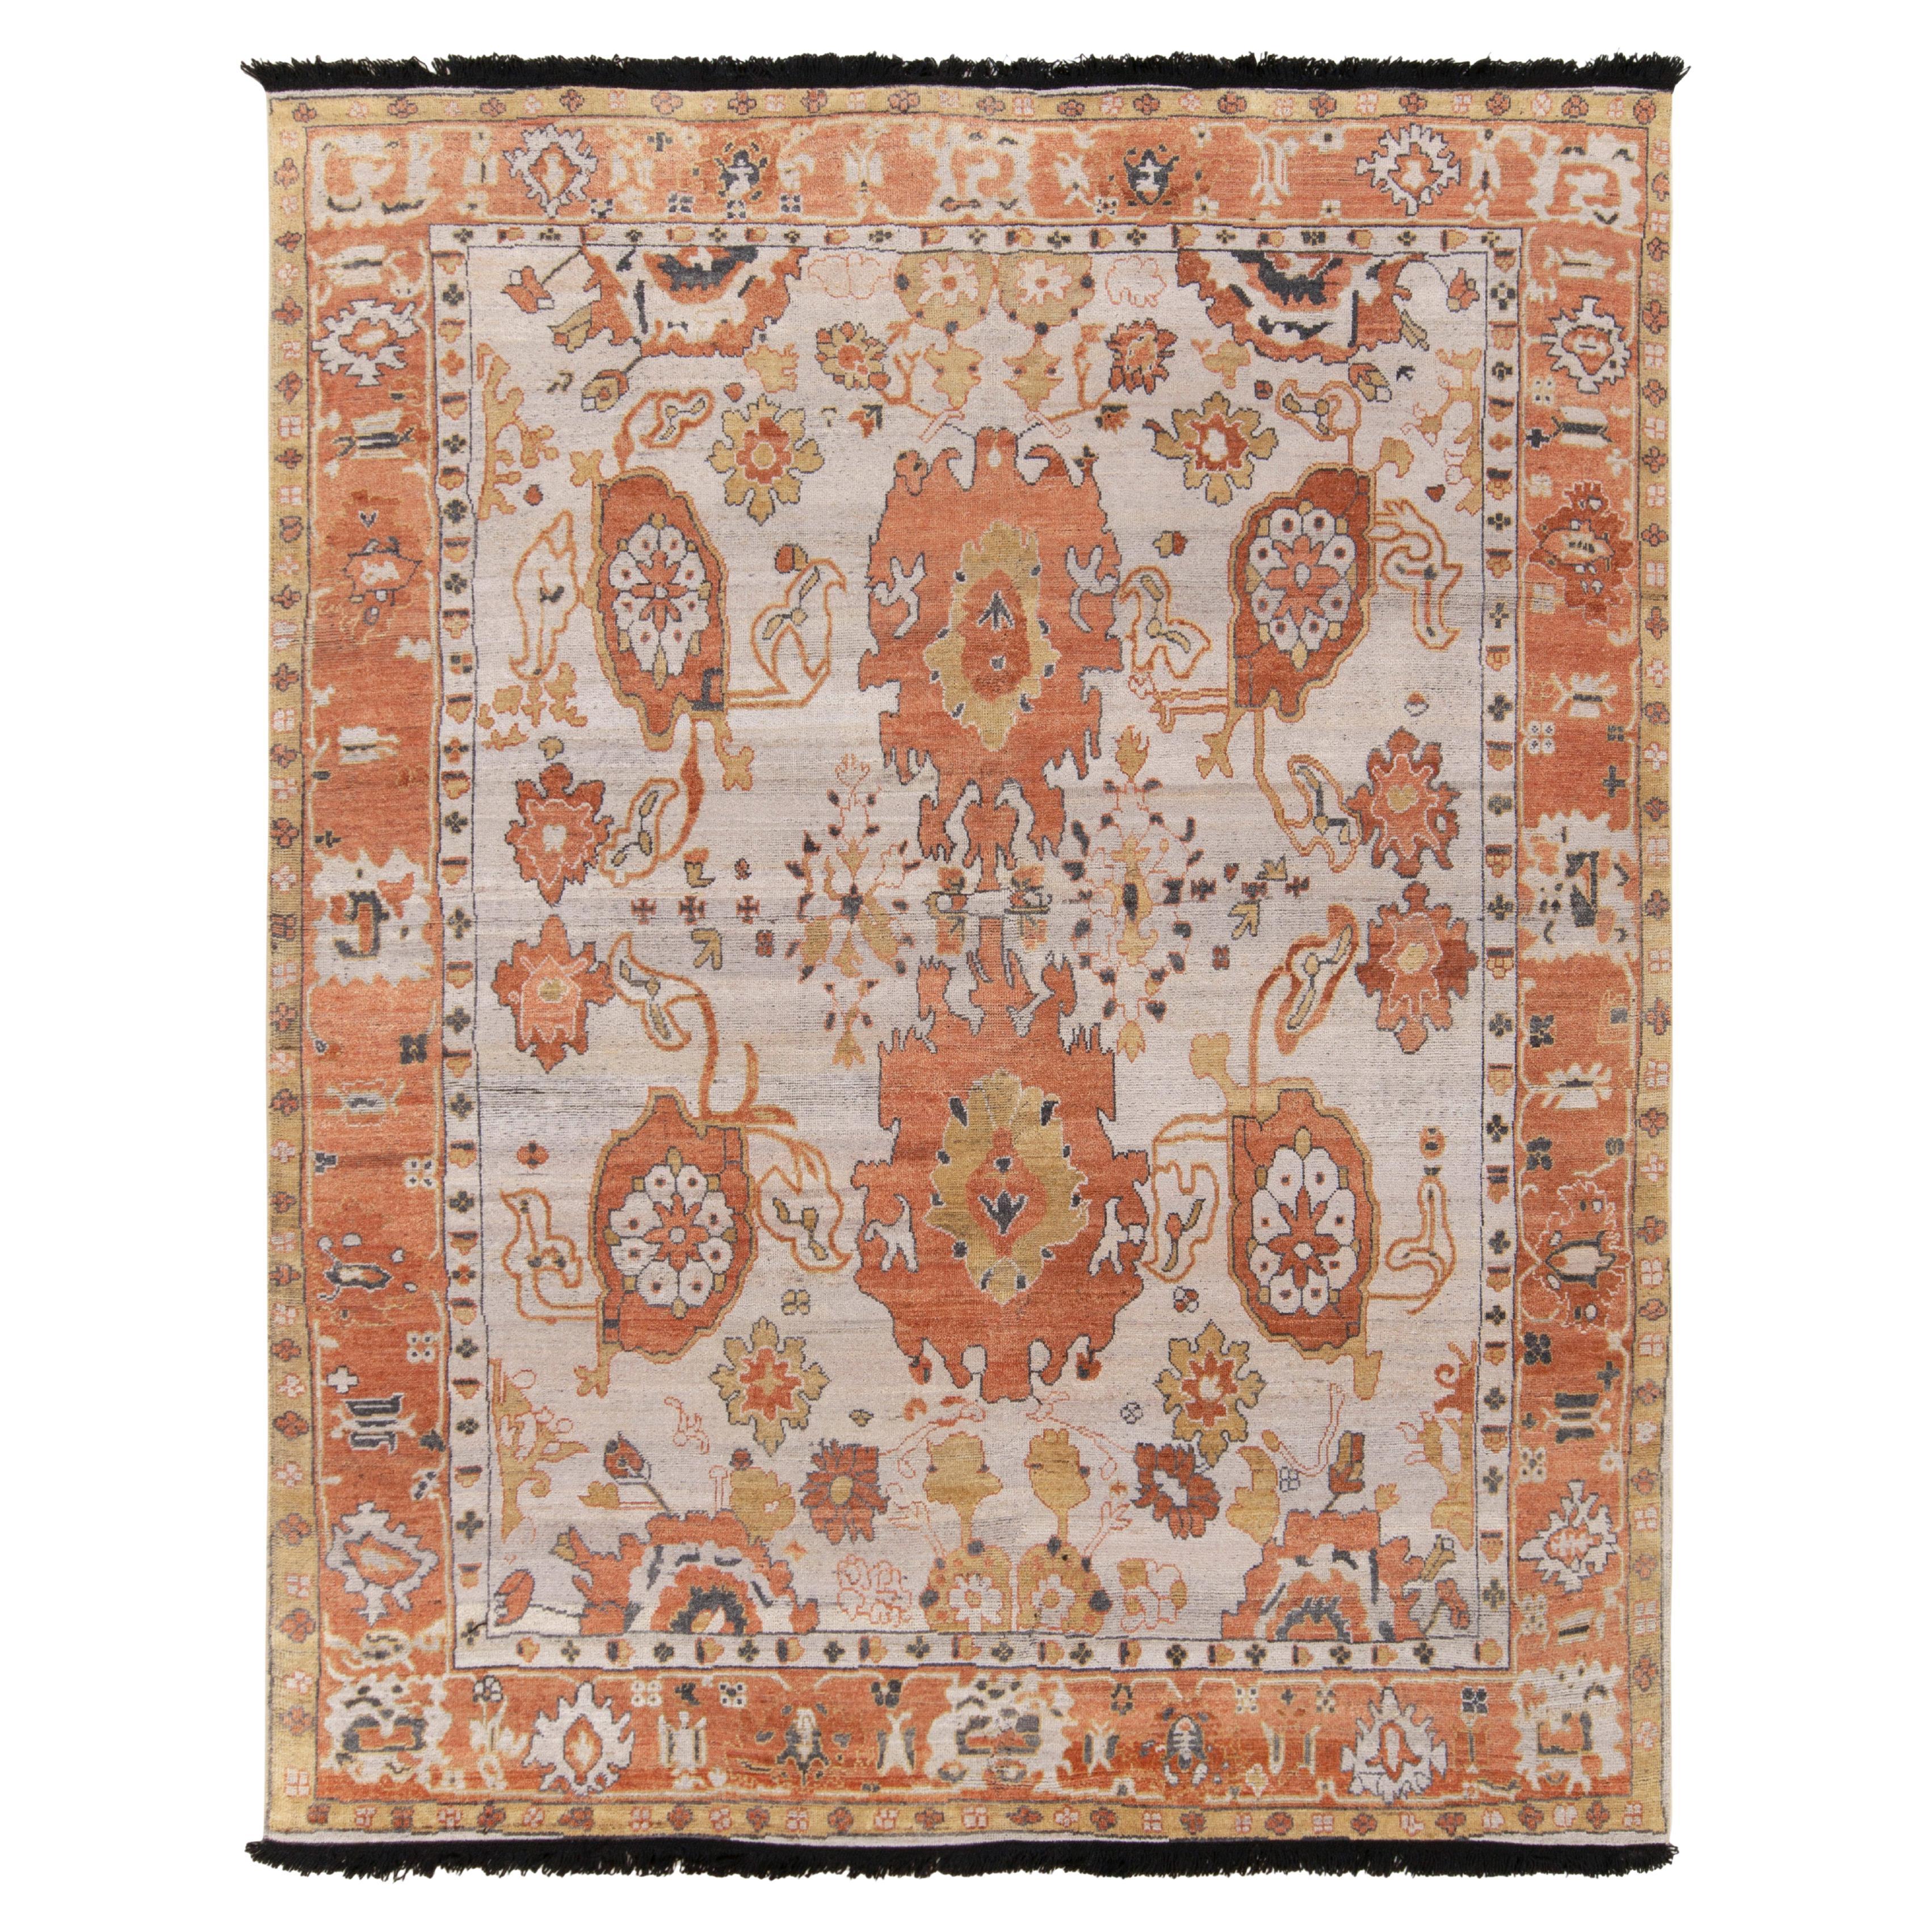 Tapis et tapis Kilim de style Oushak des années 1900 à motifs floraux blancs, oranges et dorés